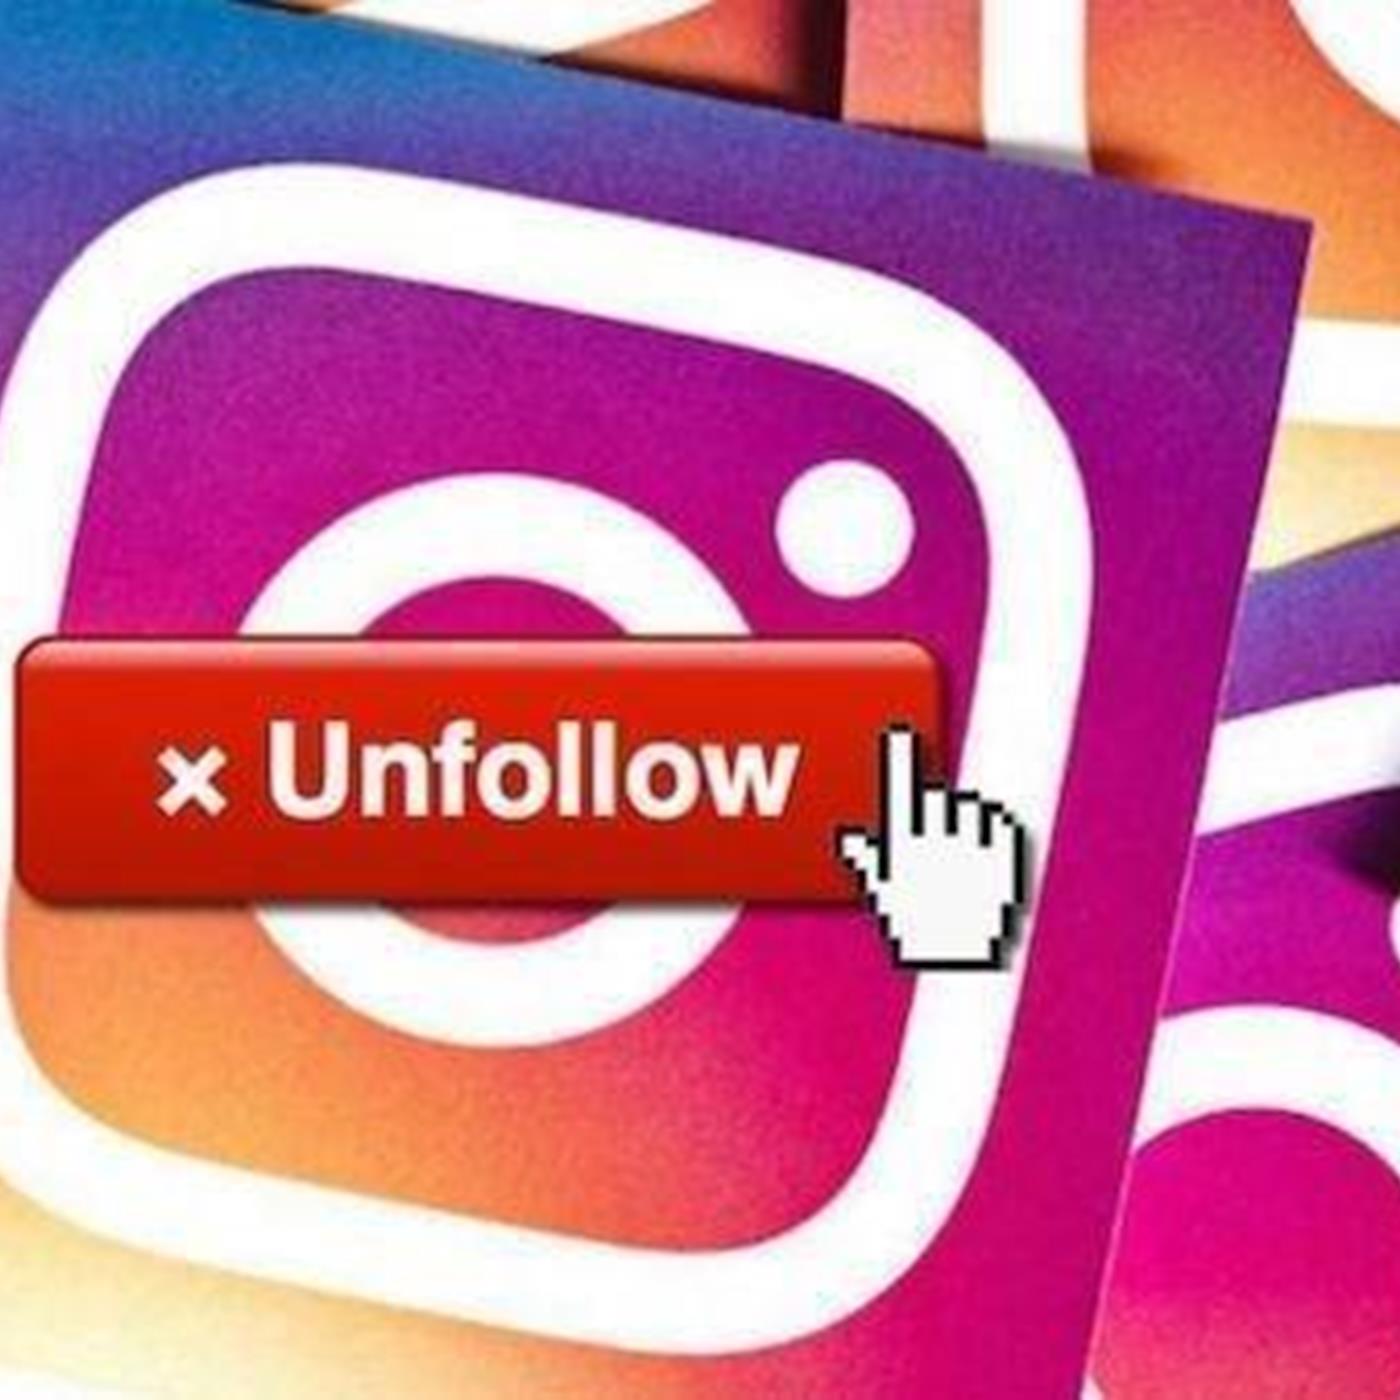 instagramda unfollow edenleri bulma